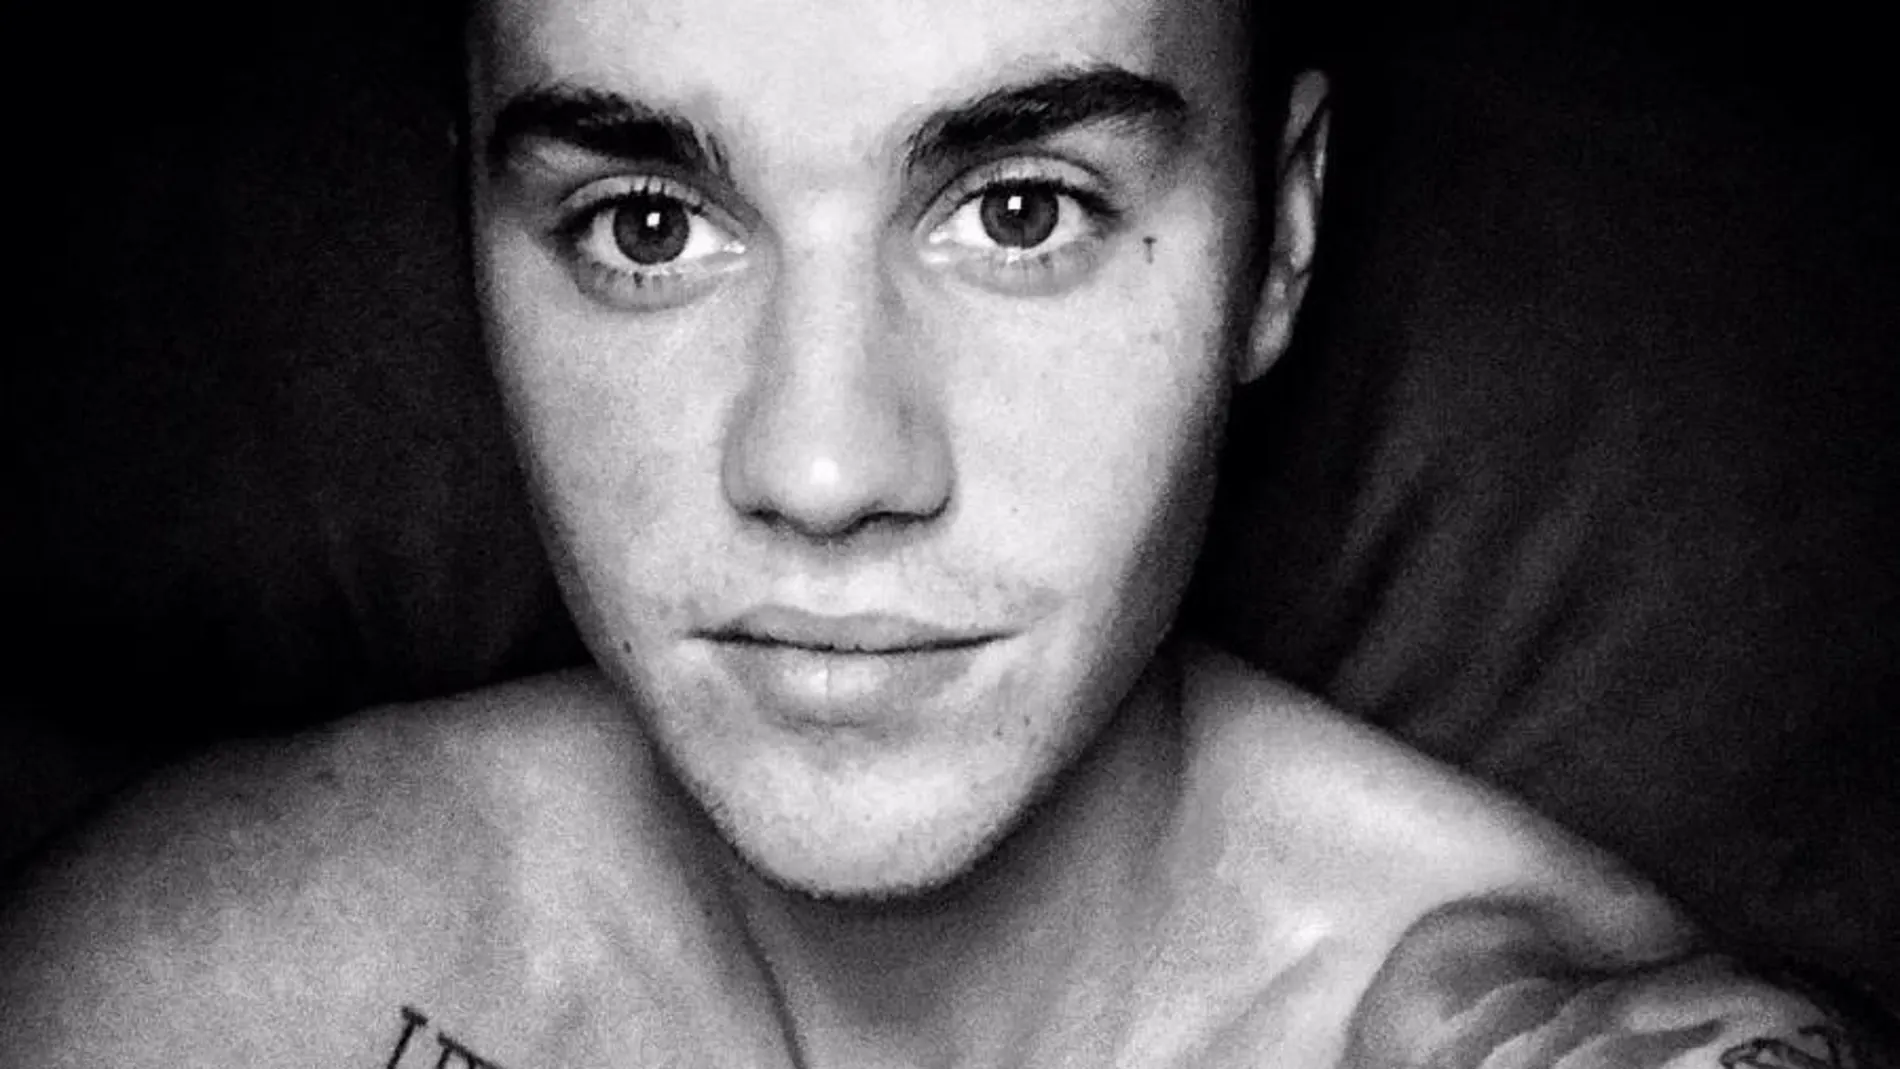 Justin Bieber revoluciona las redes sociales con su versión de «Despacito» de Luis Fonsi